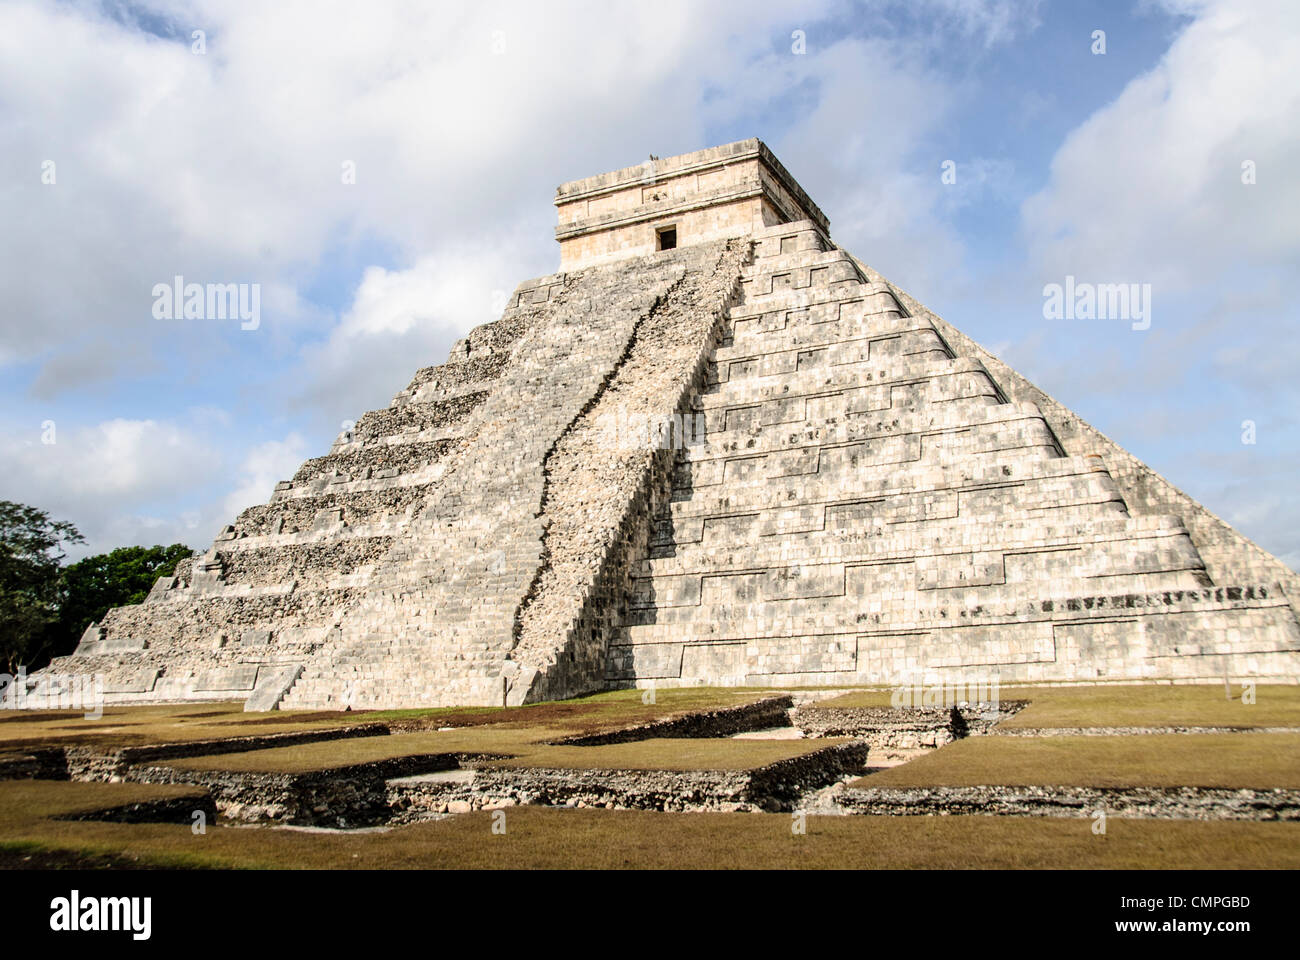 CHICHEN ITZA, Mexique - plan d'ensemble du Temple de Kukulkan (El Castillo) à la Zone archéologique de Chichen Itza, les ruines d'une importante ville de la civilisation Maya au coeur de la péninsule du Yucatan au Mexique. Banque D'Images